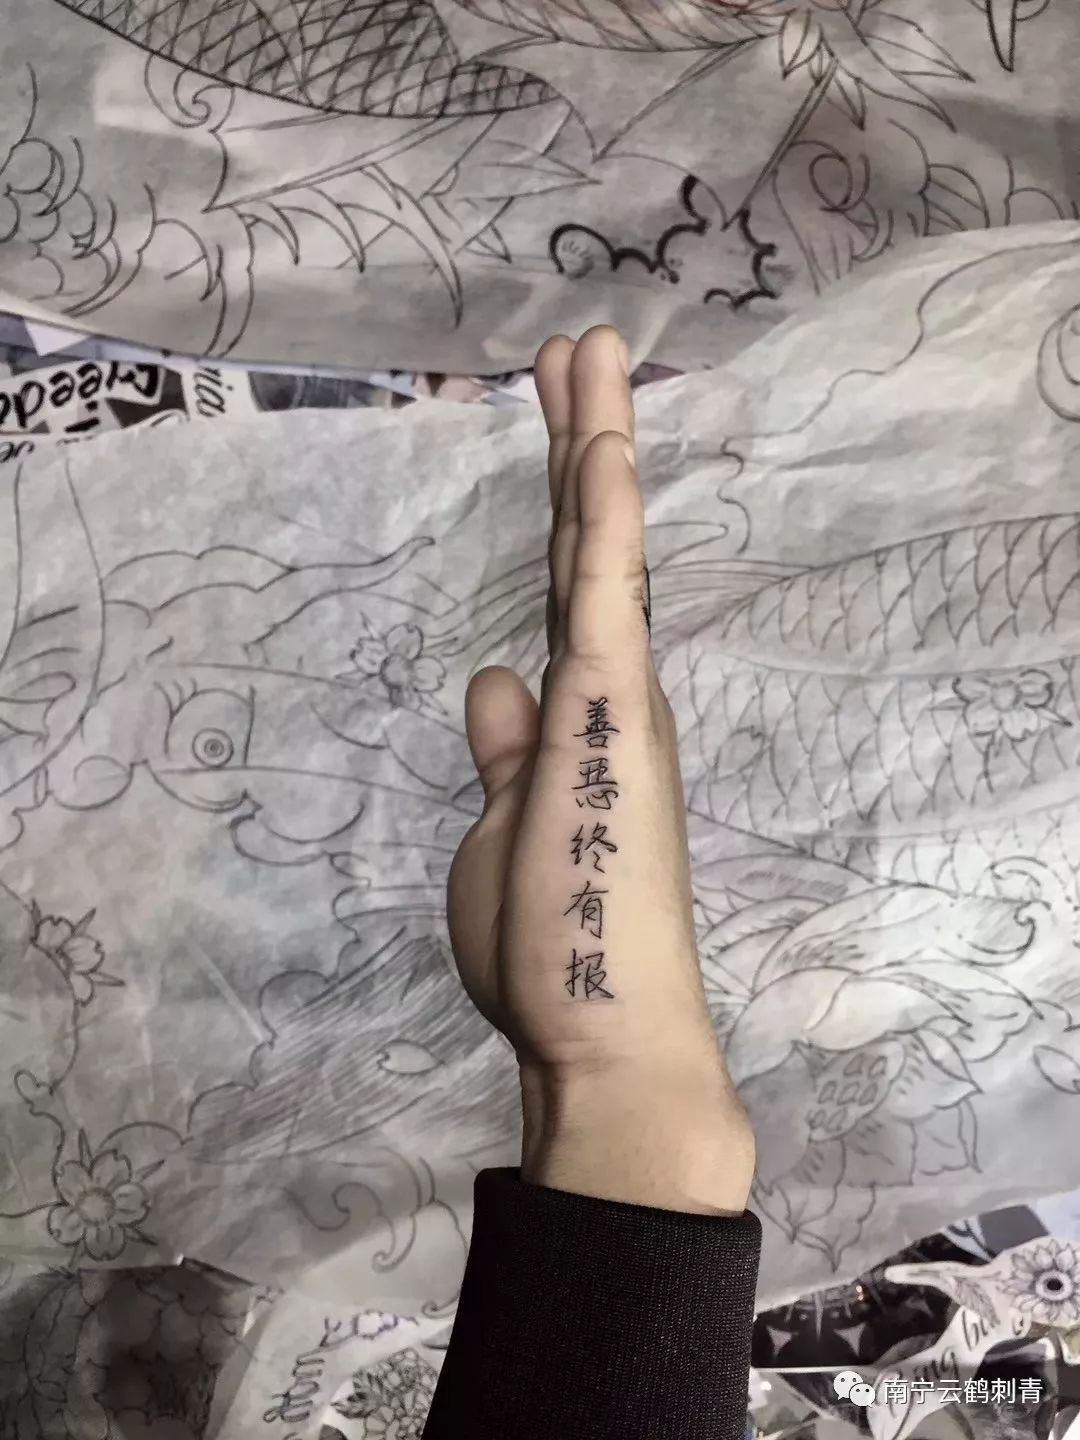 中文书法,最美的文字纹身